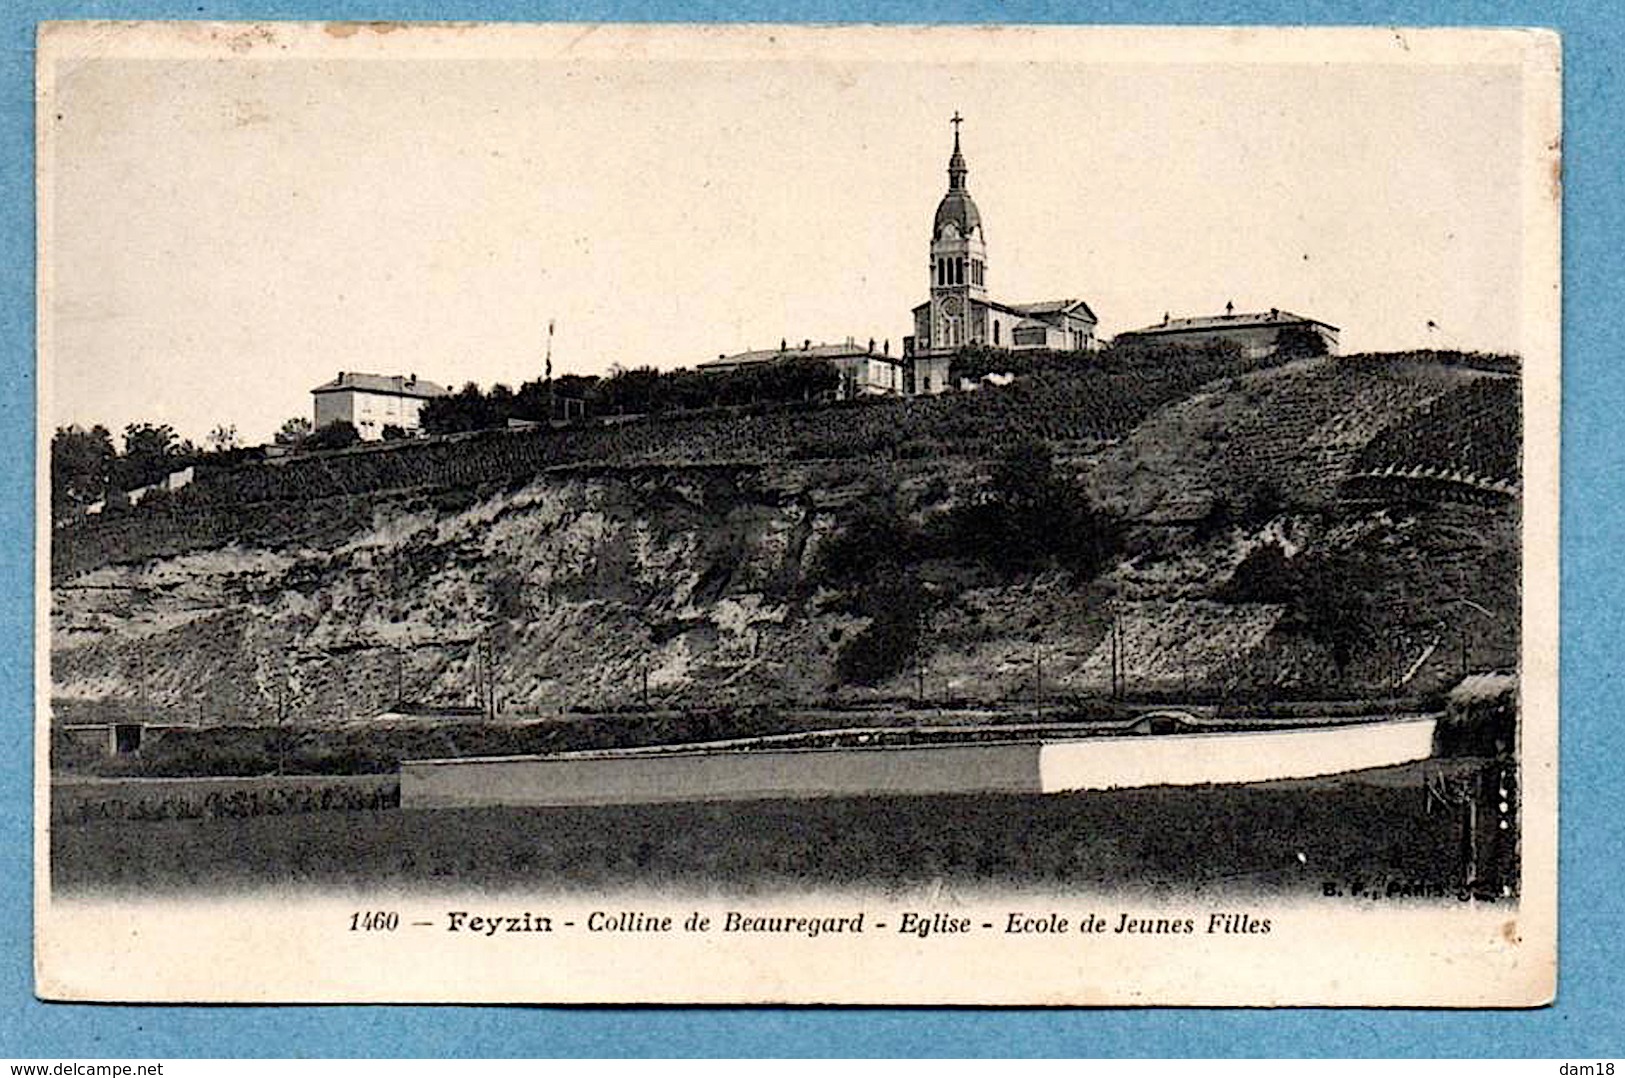 FEYZIN (69) 1911 ECOLE, EGLISE, COLLINE DE BEAUREGARD PHOTOS R/V - Feyzin